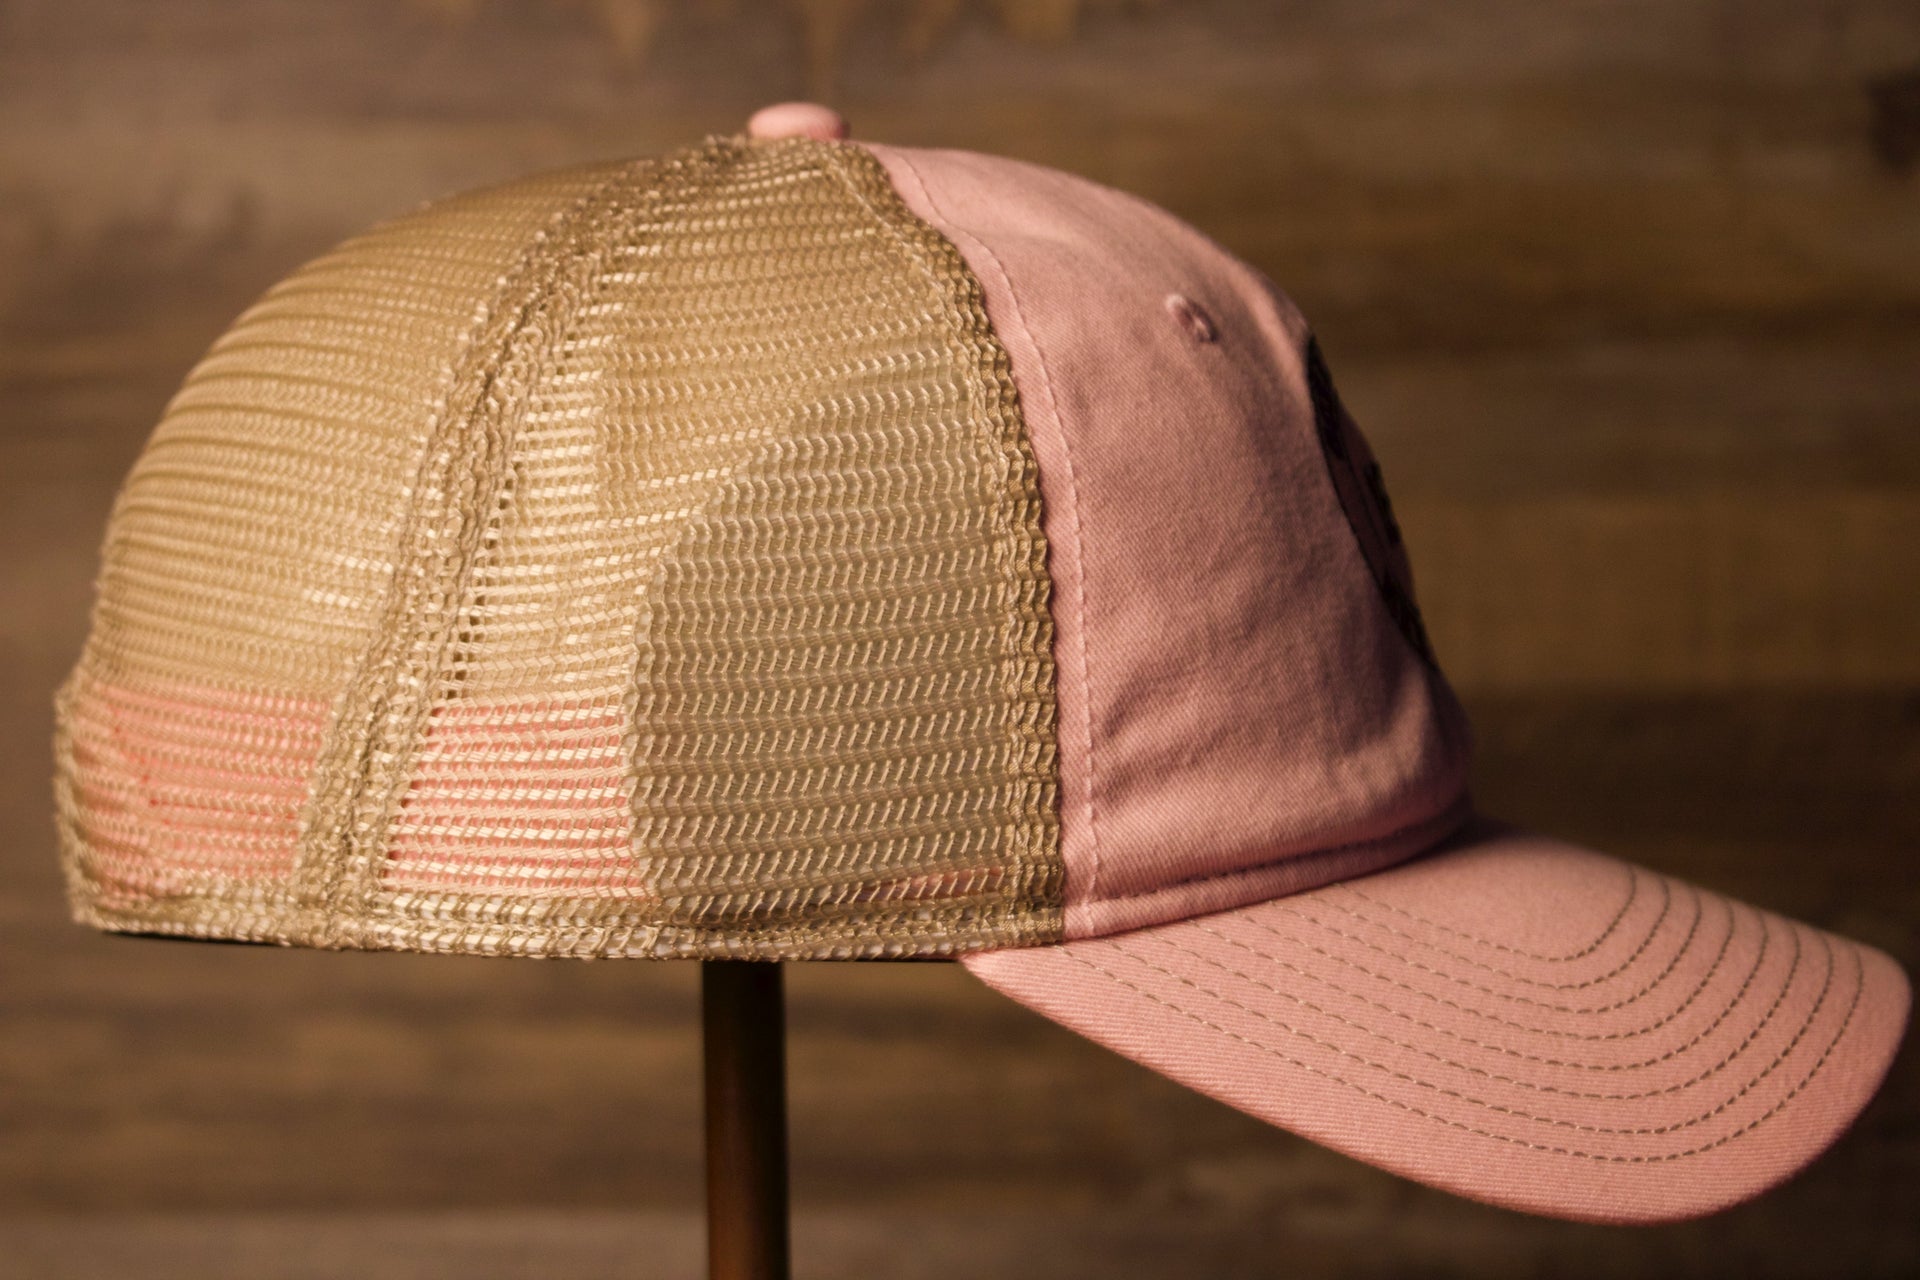 Ocean city Trucker hat Pink khaki | ocnj trucker hat pink womens hat the wearers right side has the trucker backing